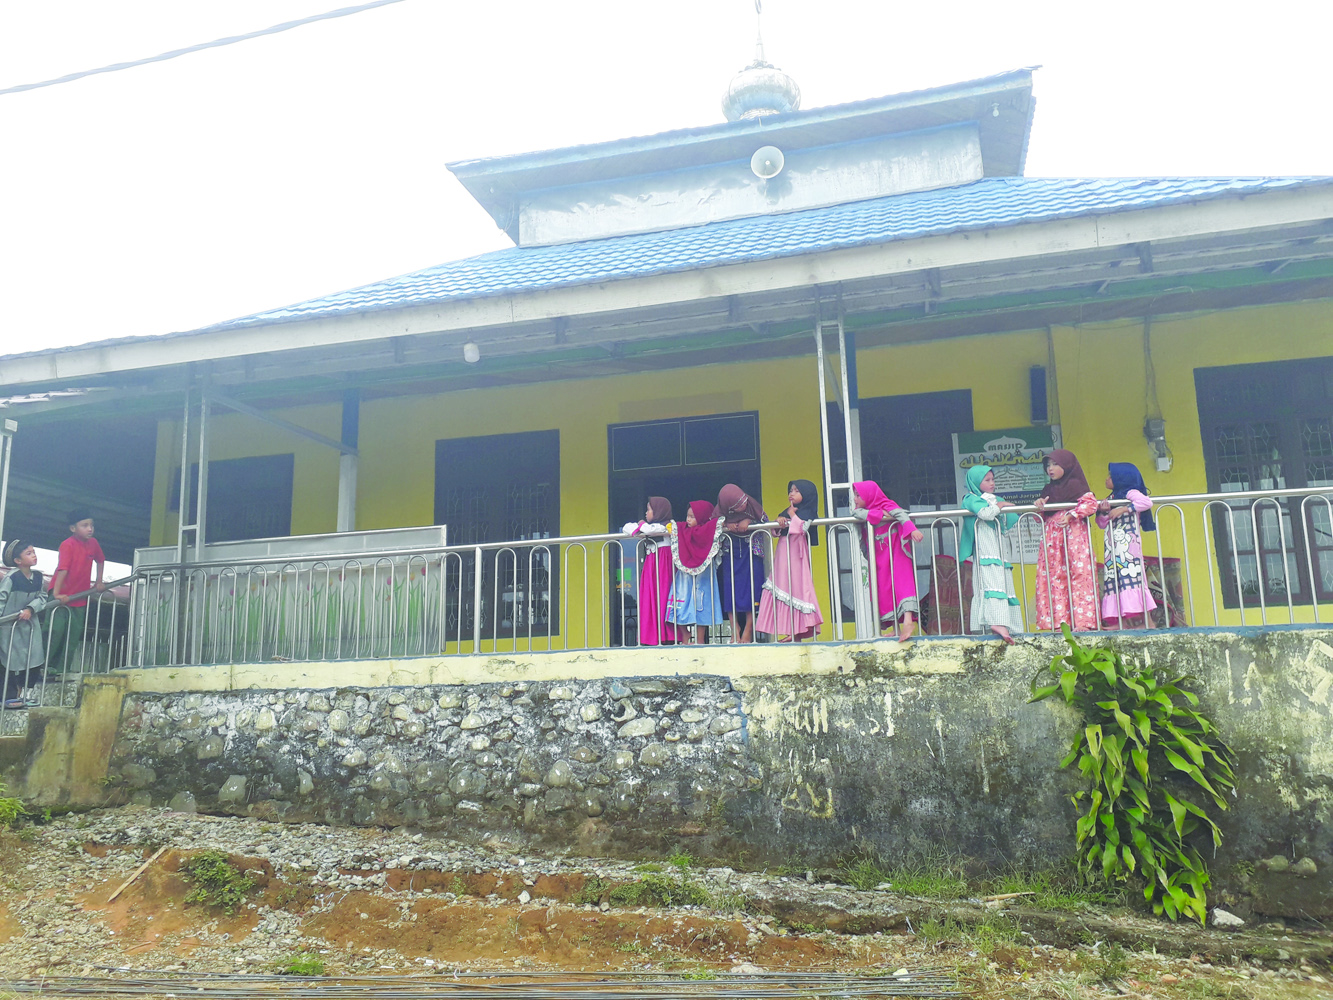 Menengok Masjid Al-Hikmah di Atas Bukit Dusun Kerinjing Dengan Taman Menghadap Danau